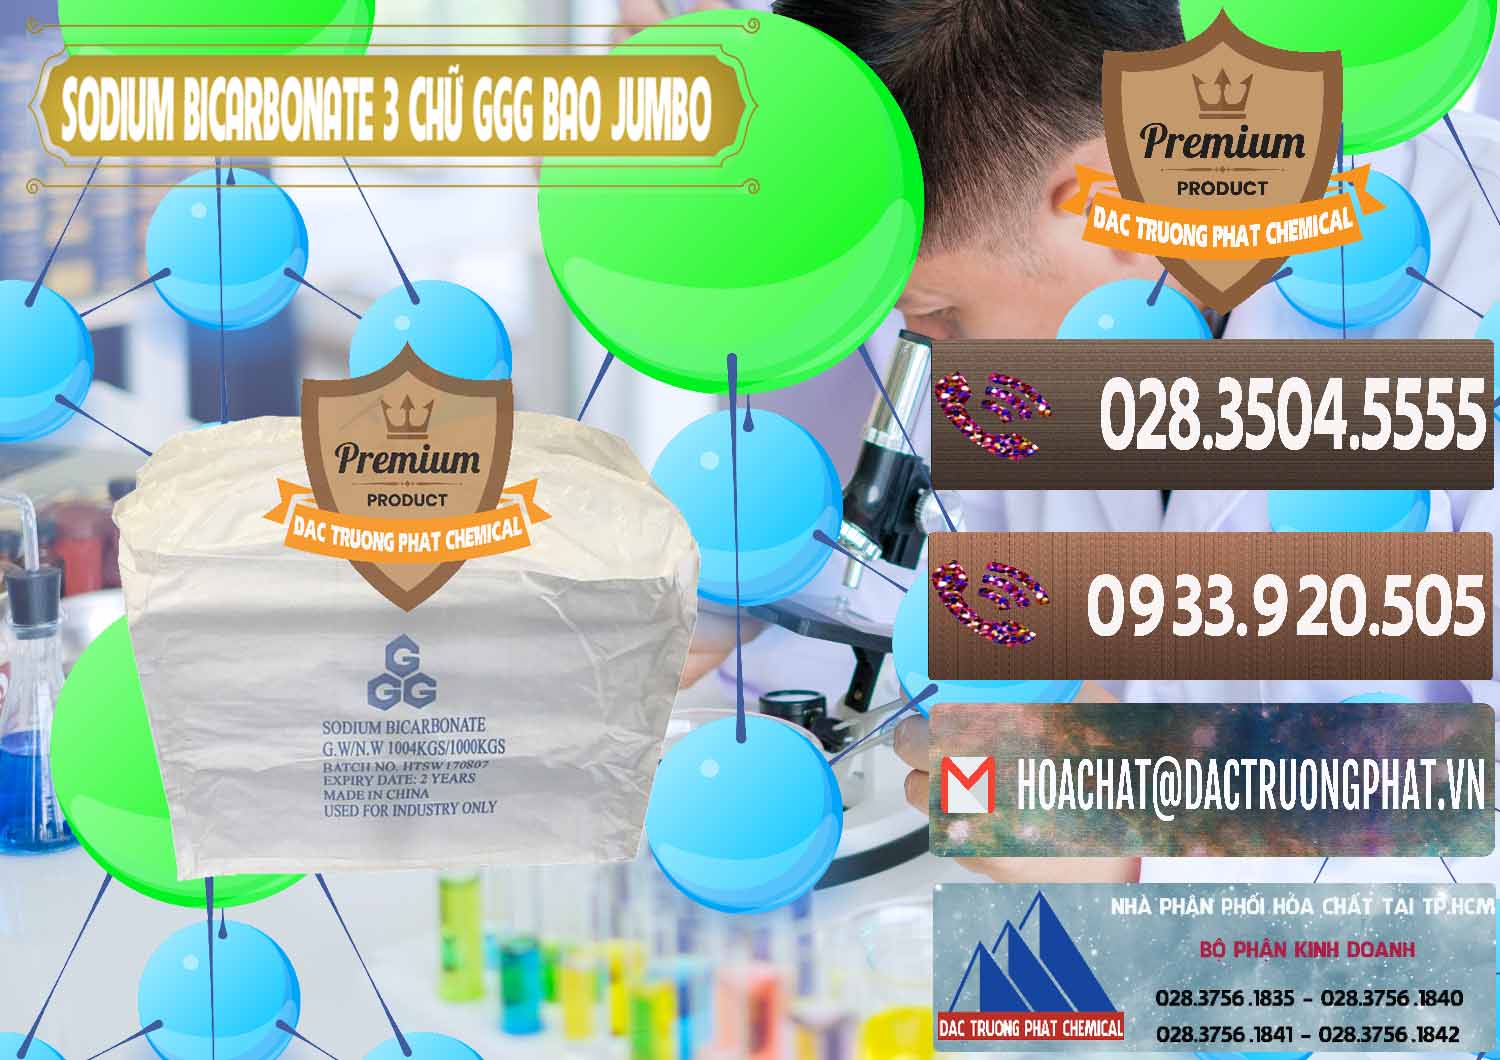 Nhà cung cấp ( bán ) Sodium Bicarbonate – Bicar NaHCO3 Food Grade 3 Chữ GGG Bao Jumbo ( Bành ) Trung Quốc China - 0260 - Nhà cung cấp & phân phối hóa chất tại TP.HCM - hoachatviet.net